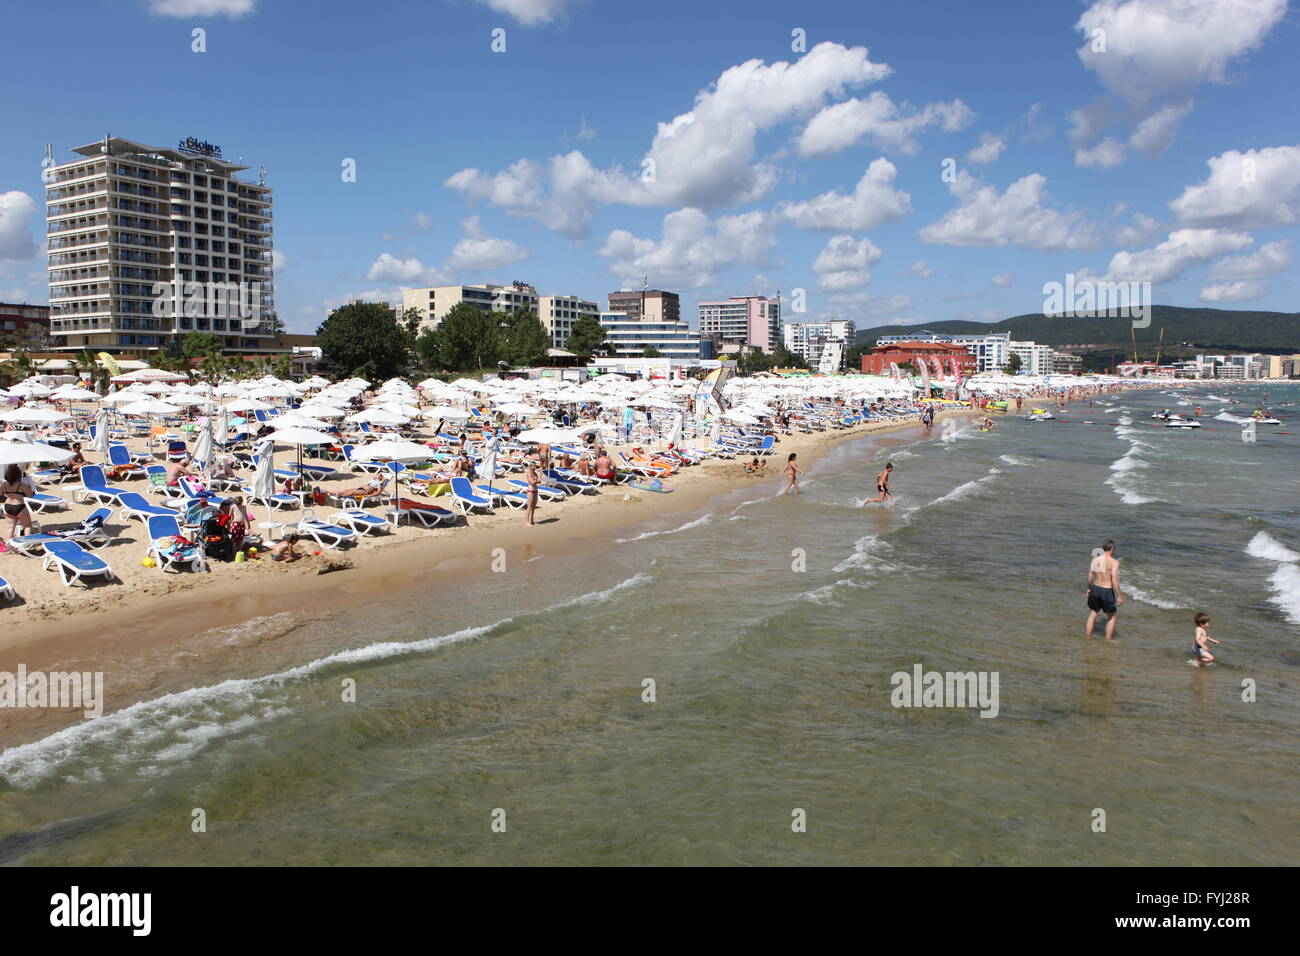 Sonnenstrand, Bulgarien - 29 AUGUST: Menschen besuchen Sunny Beach am 29. August 2014. Sonnenstrand ist das größte und beliebteste Meer Stockfoto